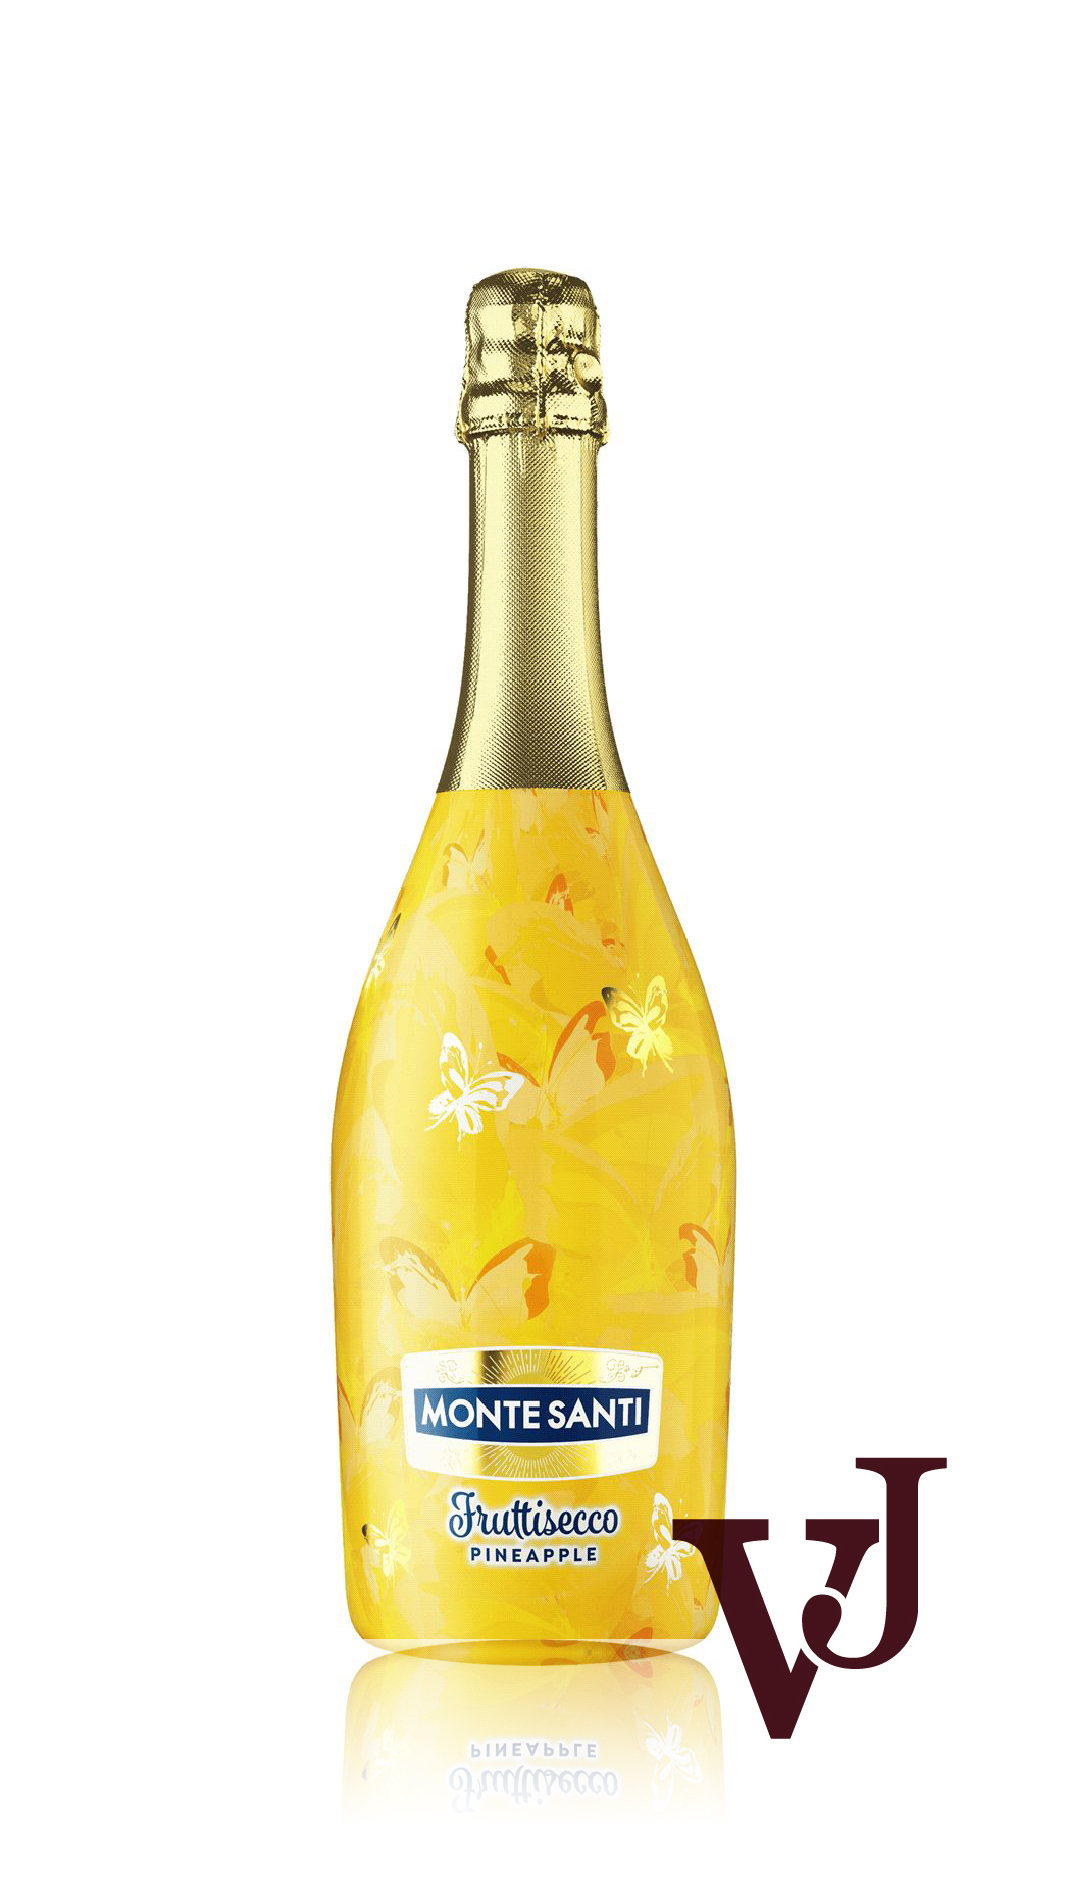 Smaksatt vin & fruktvin - Monte Santi artikel nummer 5561001 från producenten JNT Group S.A Sp.K från området Italien